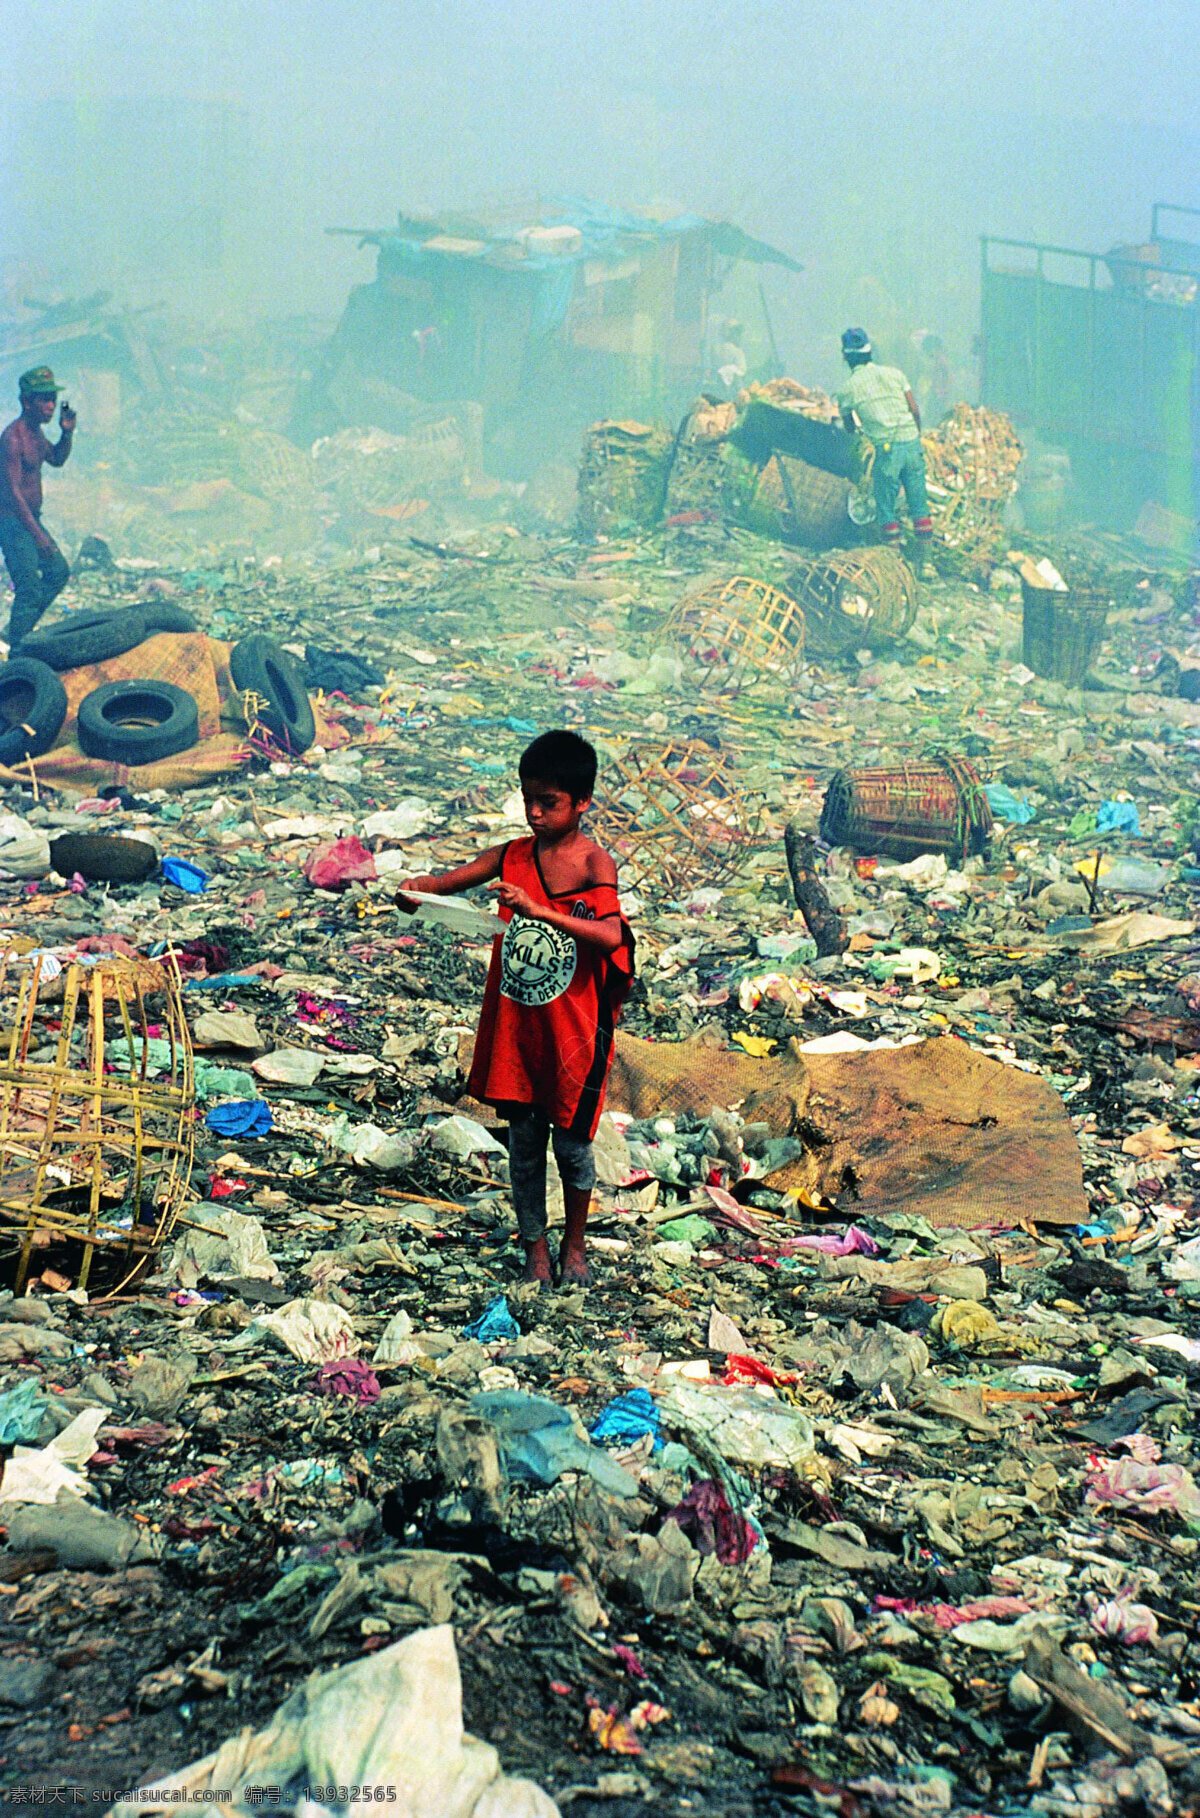 环保简报 环保 垃圾污染 生活百科 摄影图库